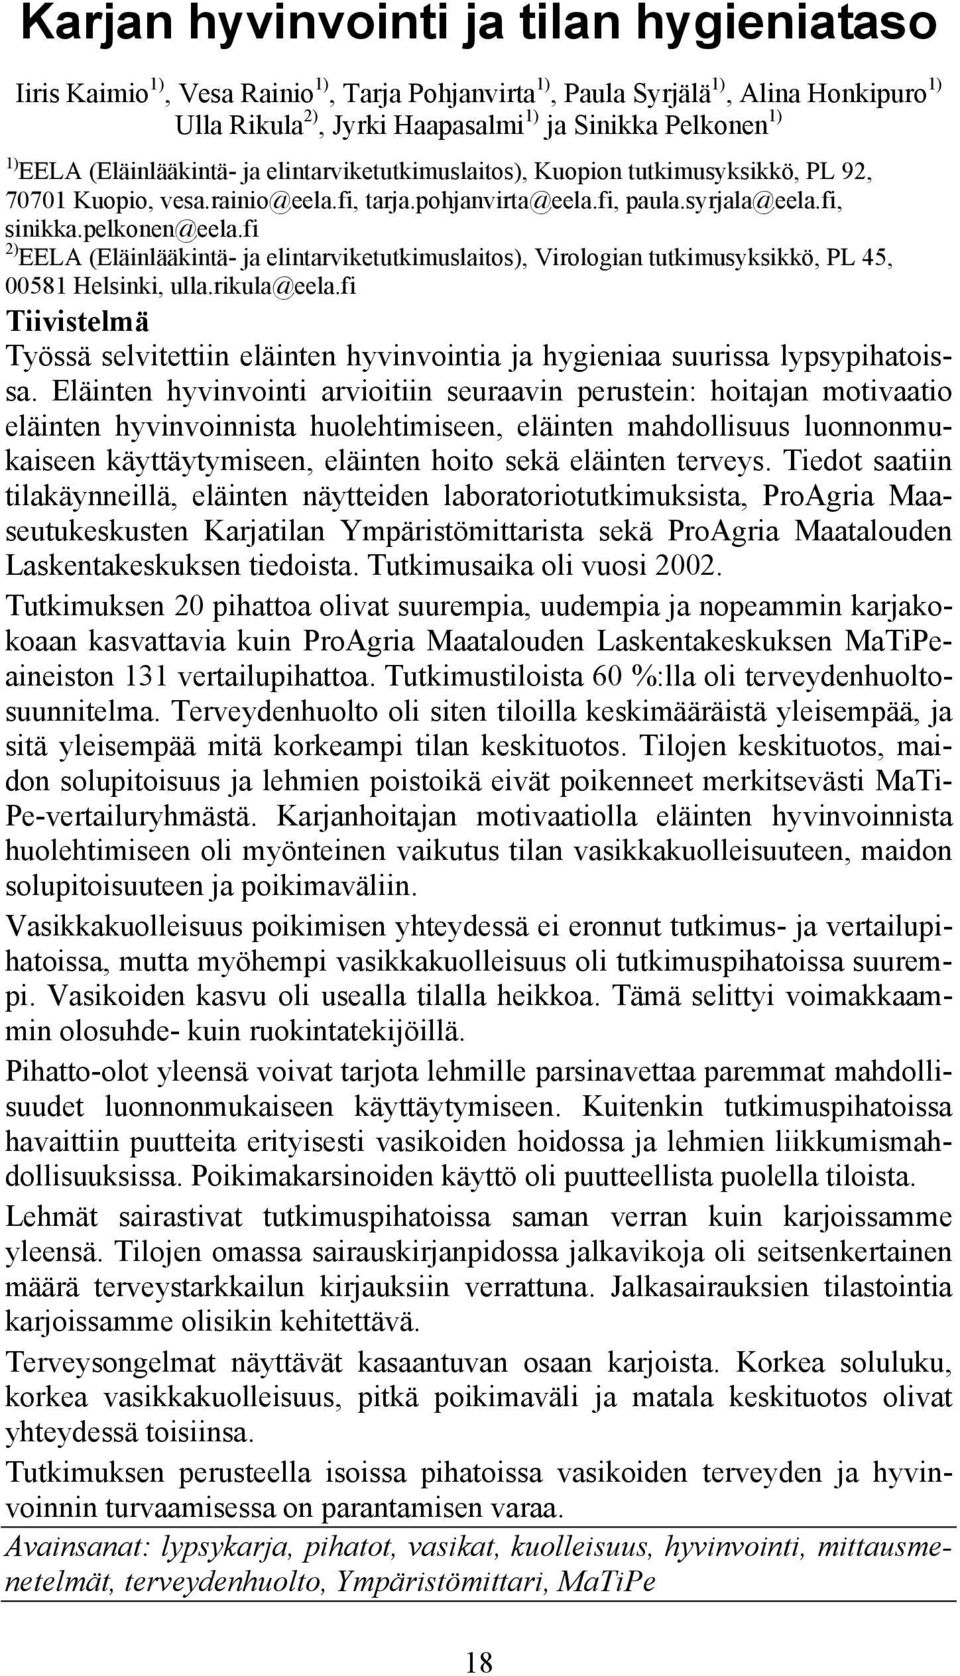 fi 2) EELA (Eläinlääkintä- ja elintarviketutkimuslaitos), Virologian tutkimusyksikkö, PL 45, 00581 Helsinki, ulla.rikula@eela.